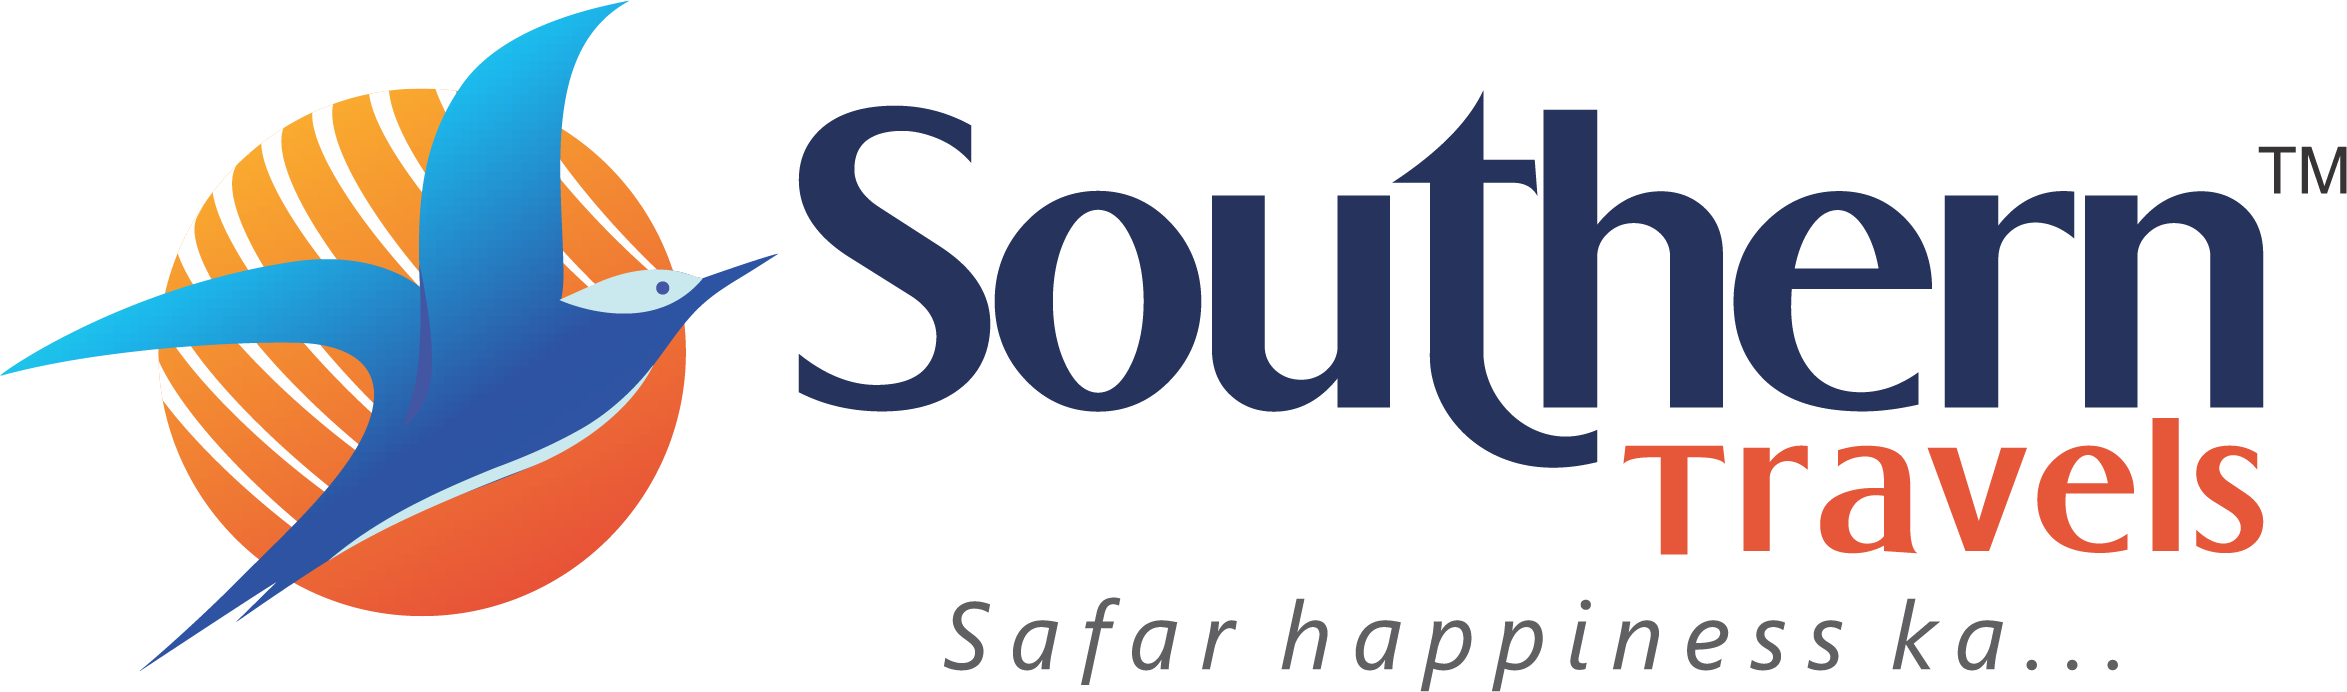 Southern Two Line Logo